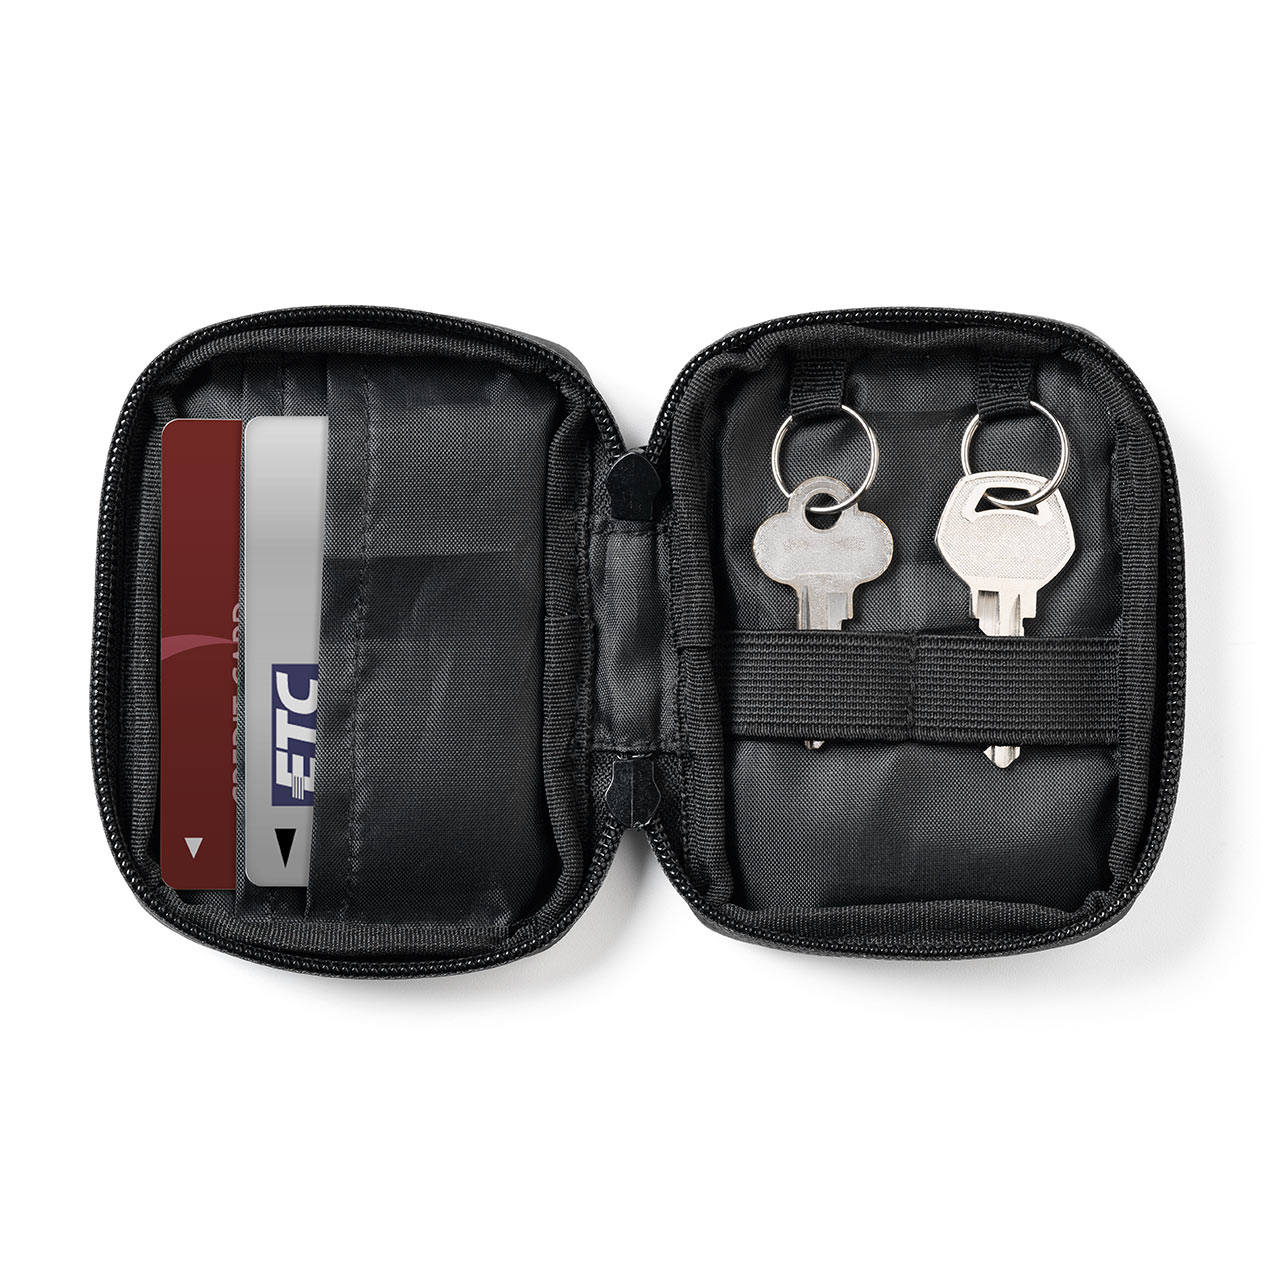 スマートキーケース スマートキー2個収納 カード2枚収納 防水 防塵 止水ファスナー 外側ポケット付き キーリング付属 ブラック 200-CAR095BK